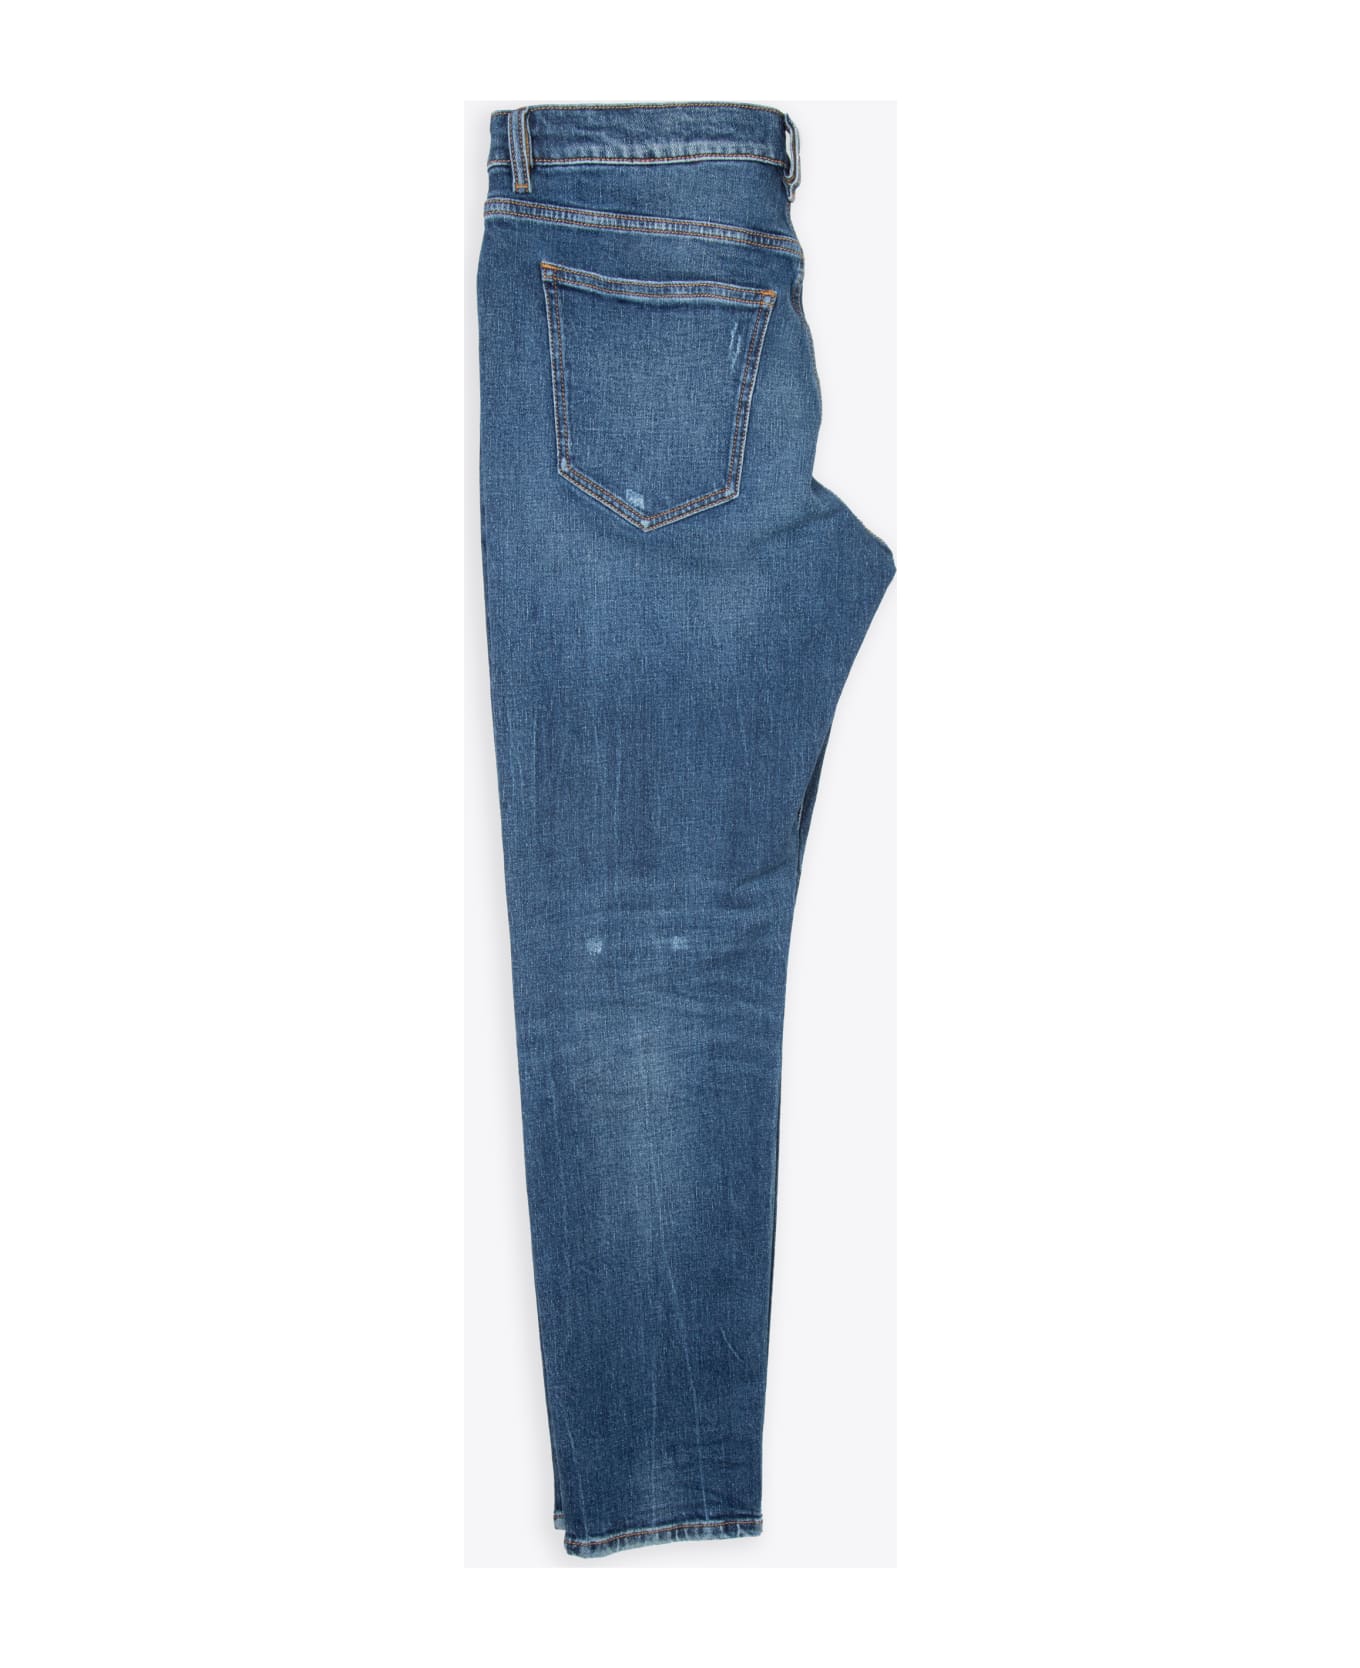 Diesel 2019 D-strukt L.30 Washed medium blue slim fit jeans - 2019 D-Strukt - Denim blu ボトムス